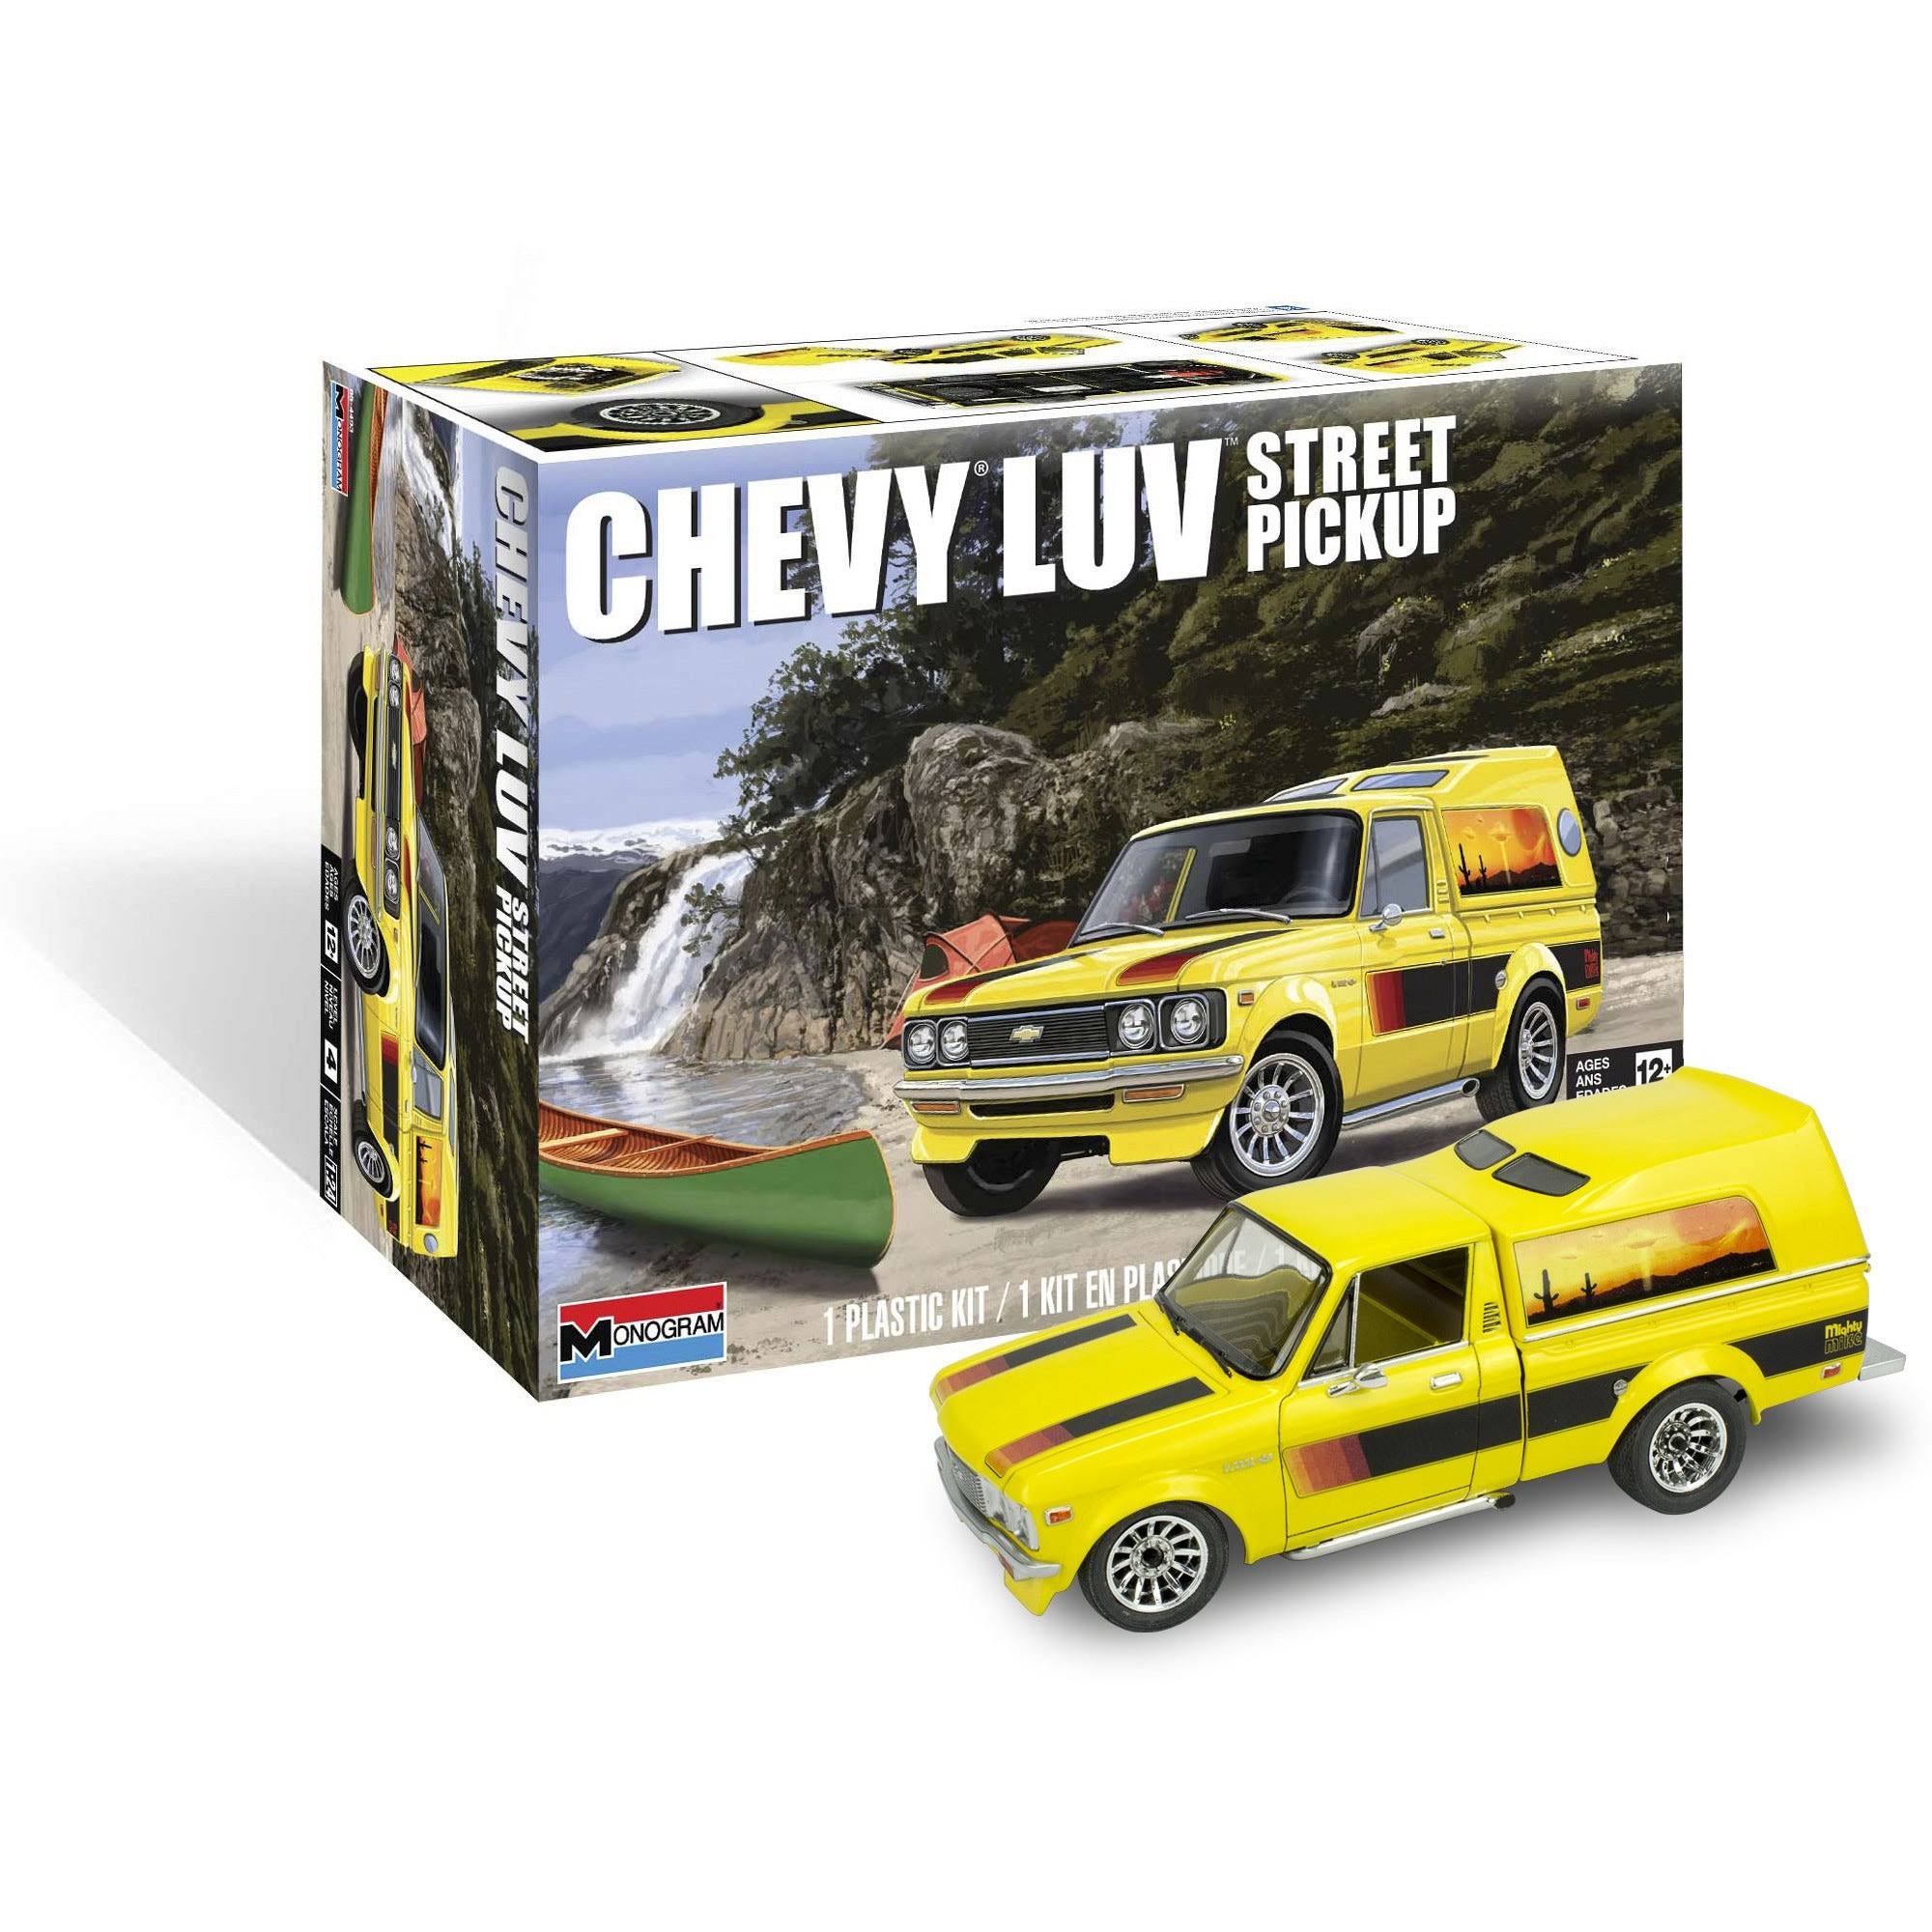 Revell Plastic Model Kit-Chevy Luv Street Pickup Truck